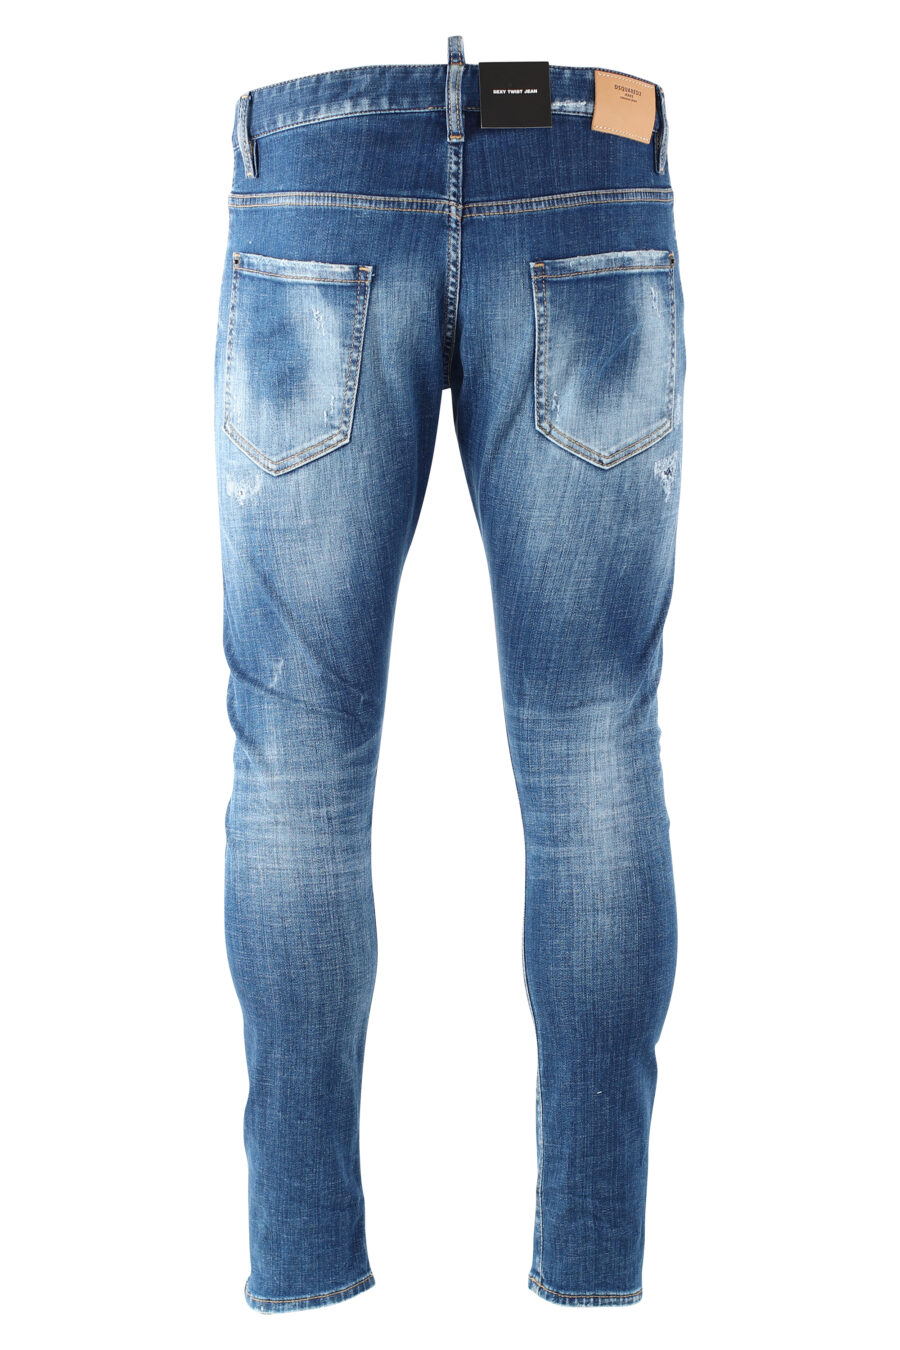 Sexy twist denim jeans "sexy twiste jean" blue worn with rips - IMG 9697